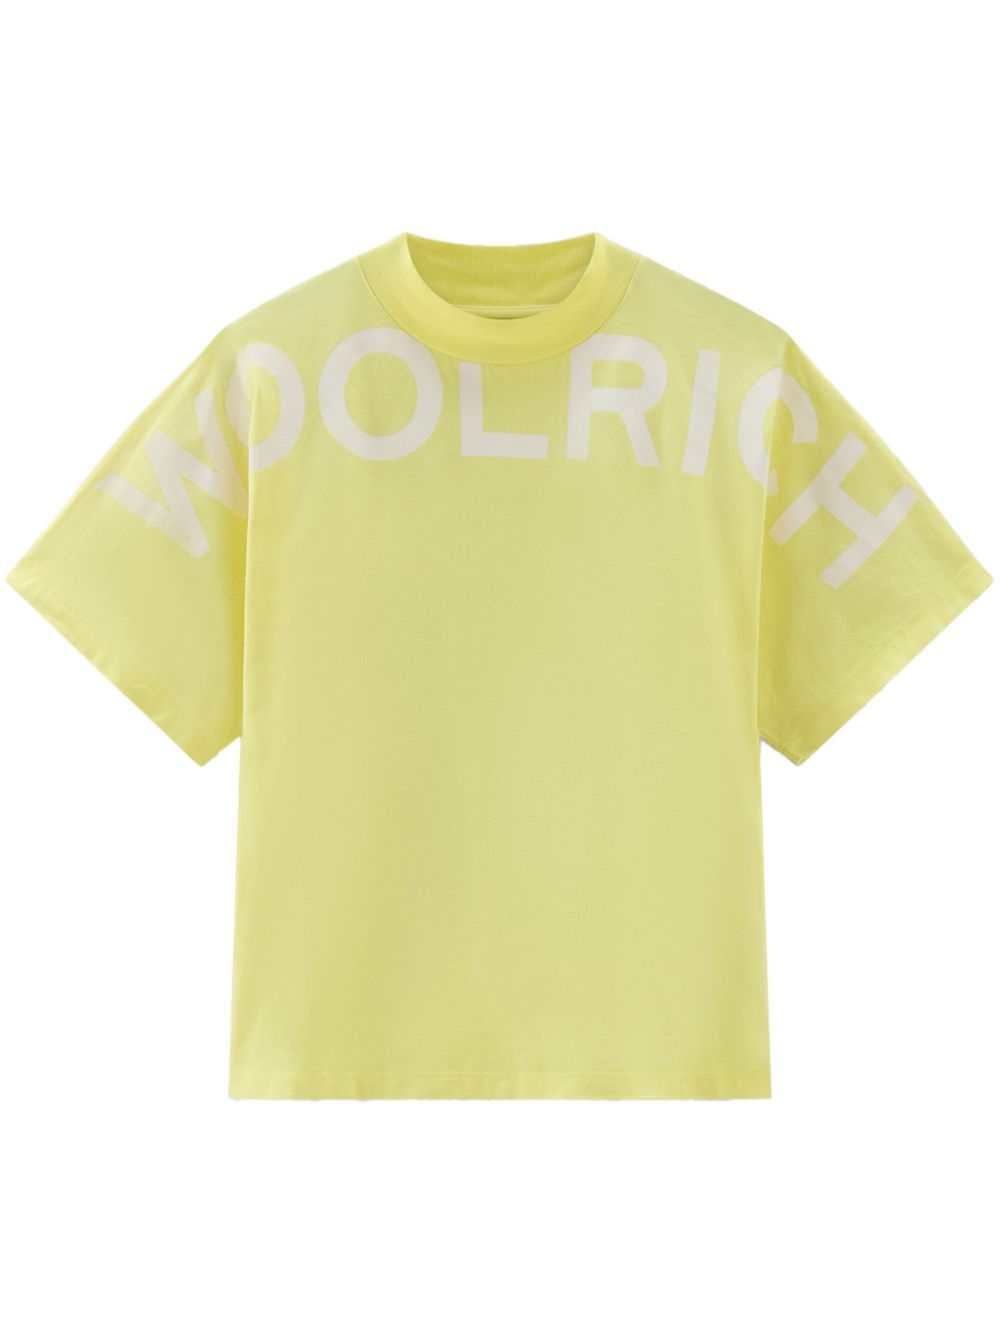 woolrich t-shirt en coton à logo imprimé - jaune